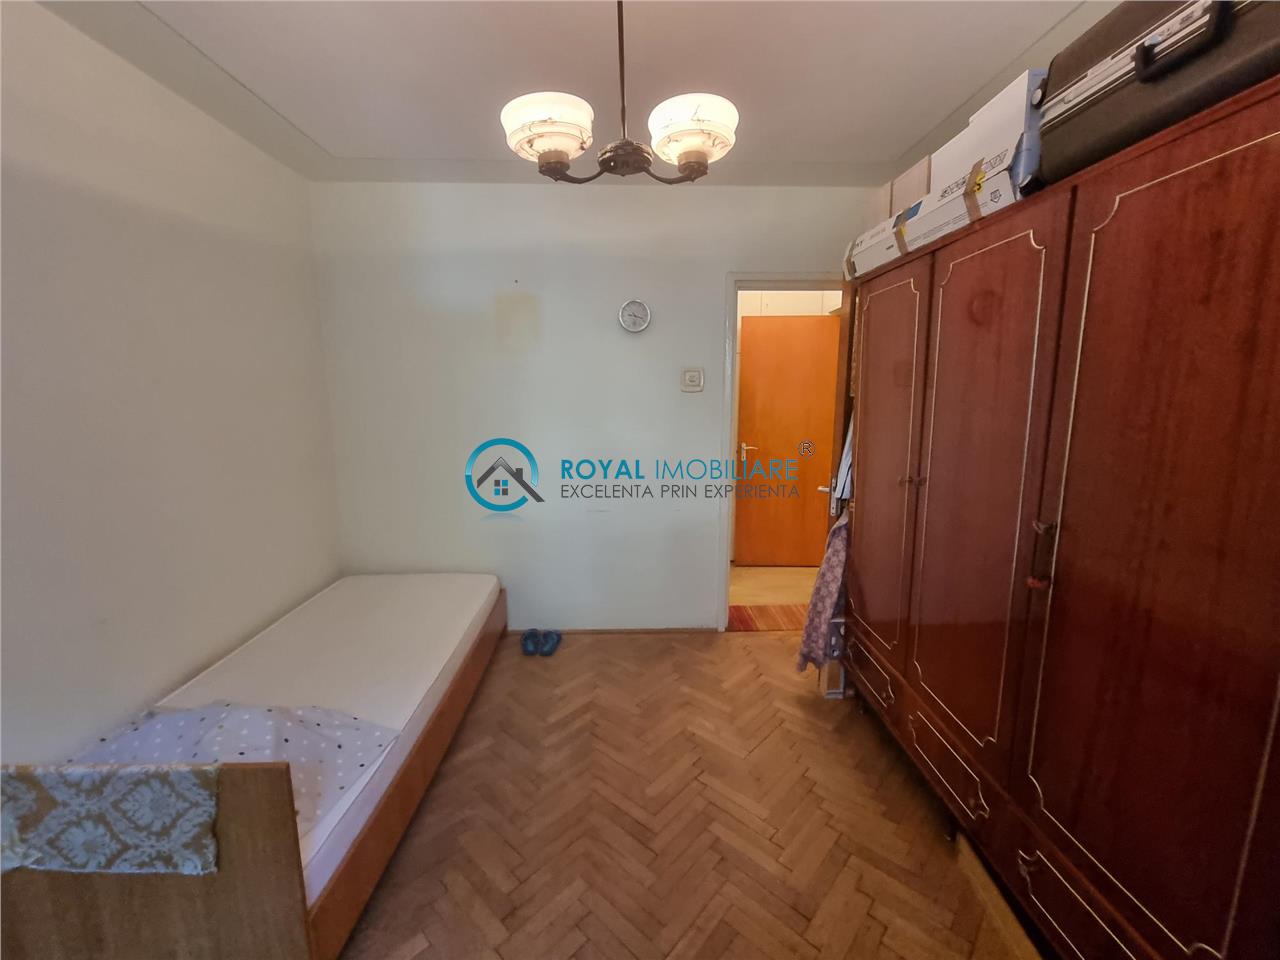 Royal Imobiliare   Vanzare Apartament zona Nord